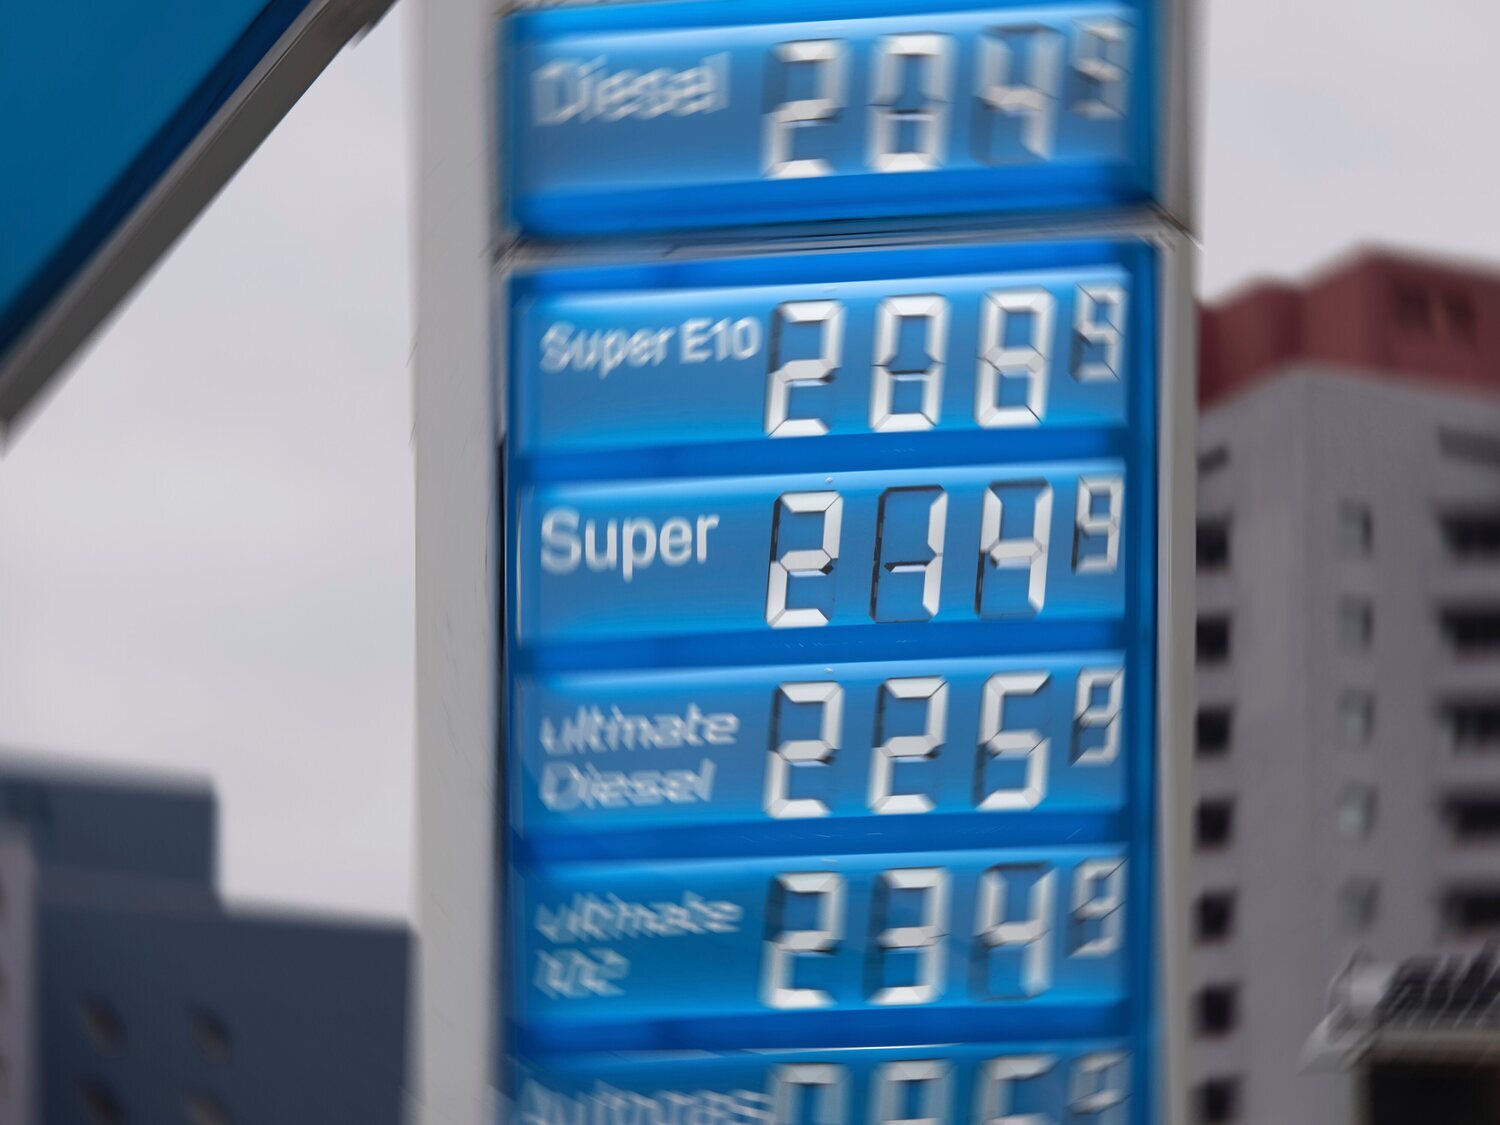 ¿Cuál sería el precio de la gasolina y el diésel en España sin impuestos?